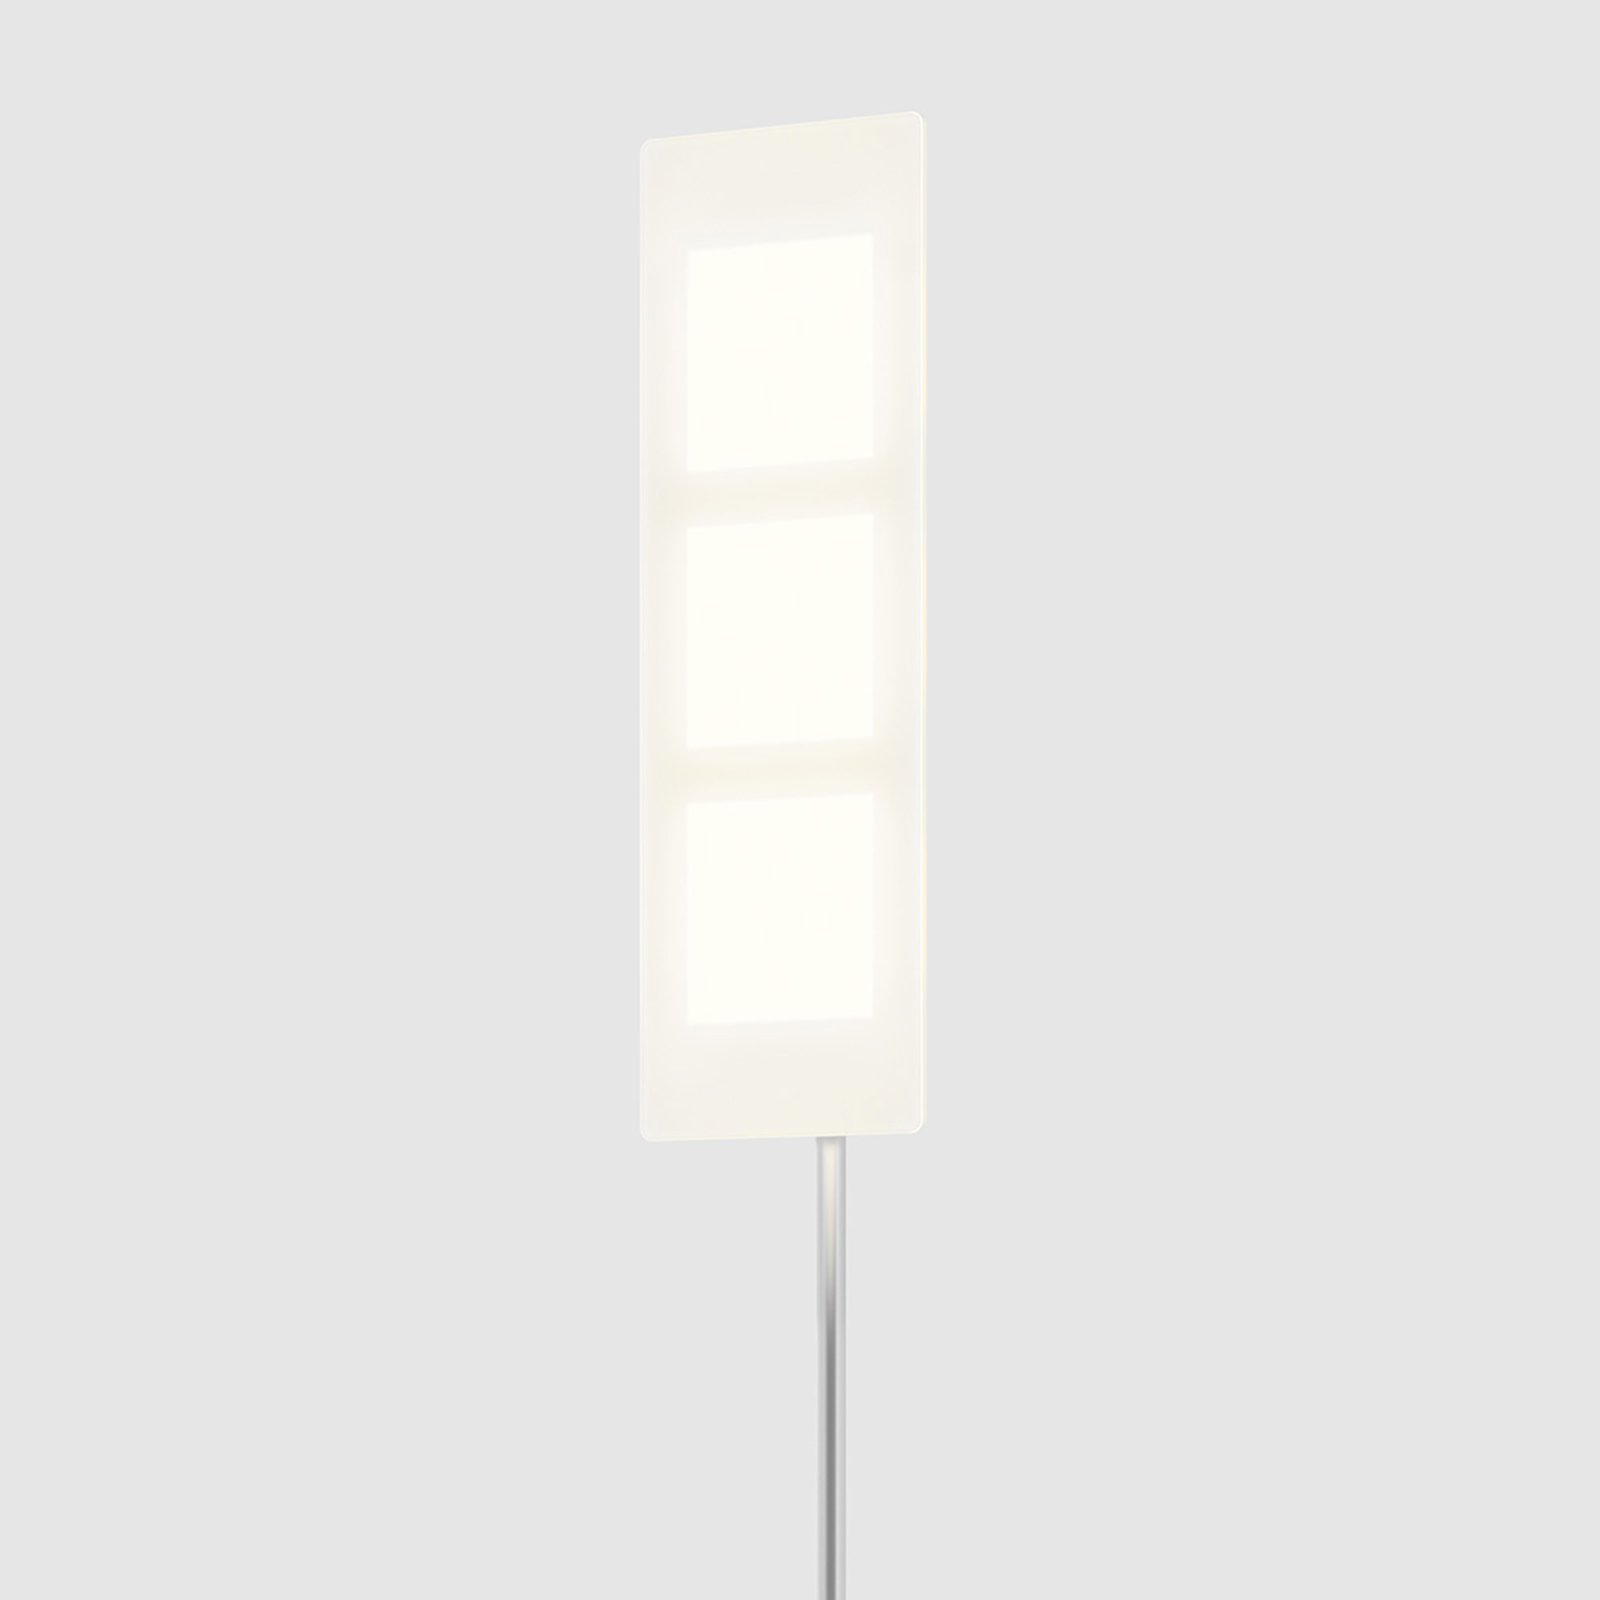 OMLED One stojanová lampa f3 – OLED v bielej farbe